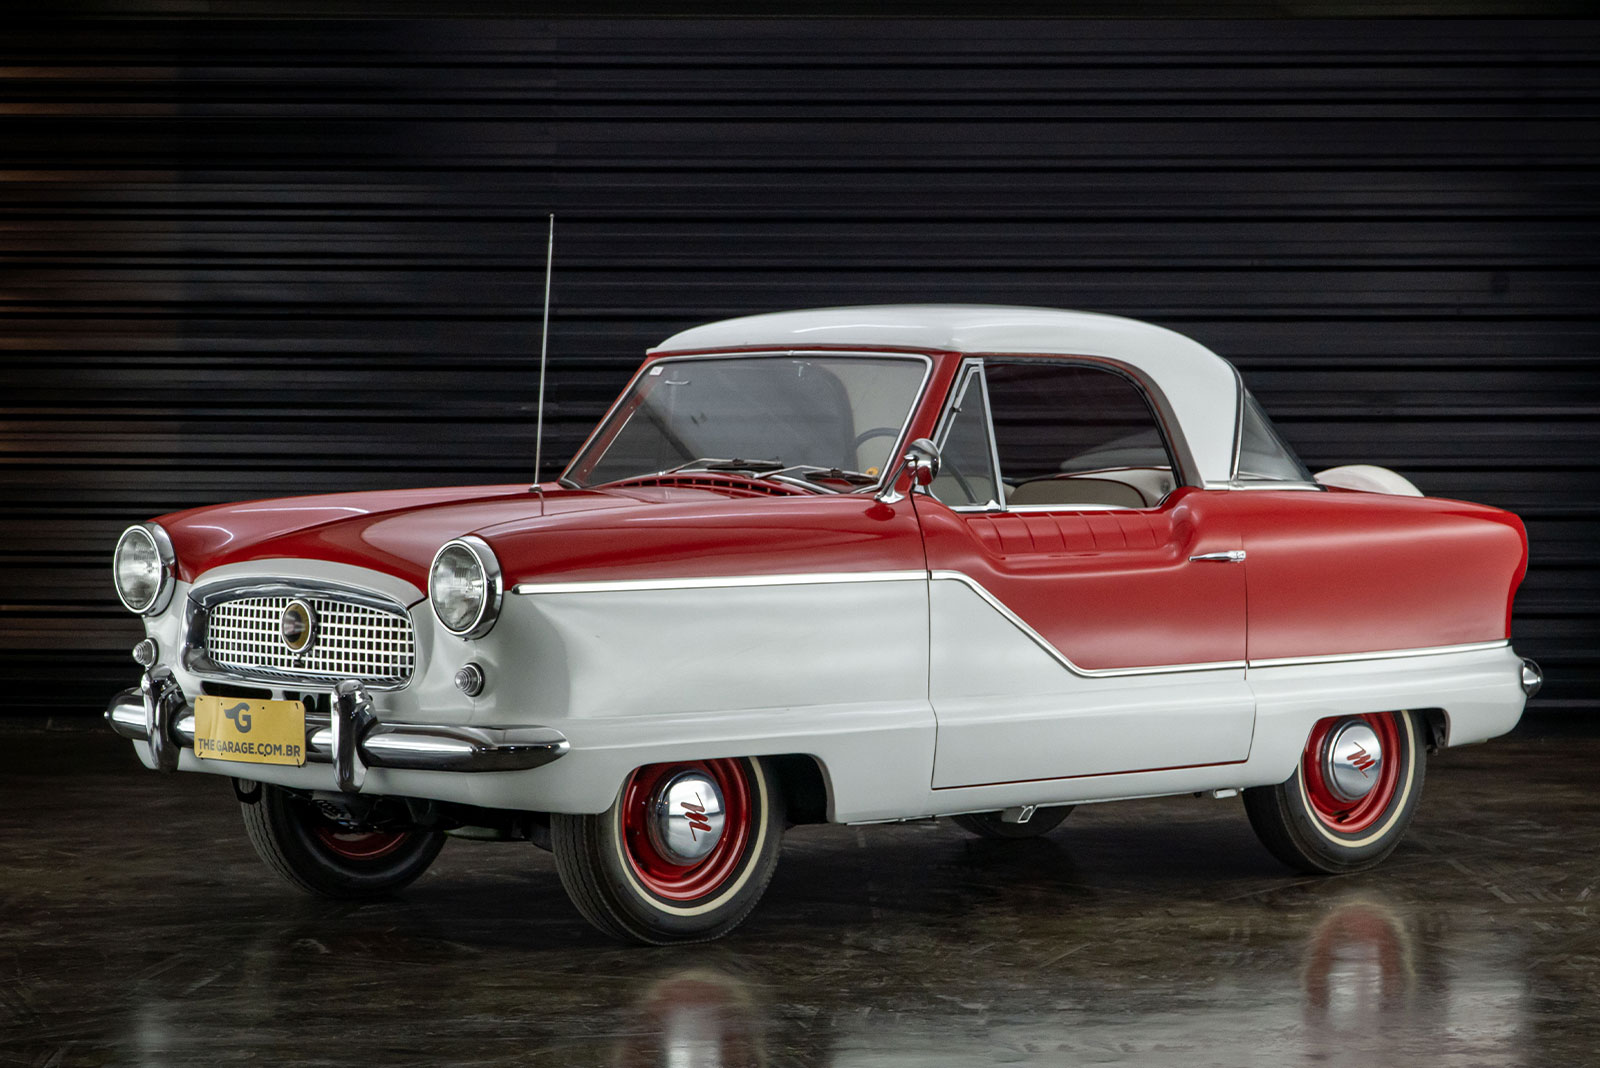 1959-nash-metropolitan-venda-sao-paulo-for-sale-classicos-a-melhor-loja-de-carros-antigos-acervo-de-carros